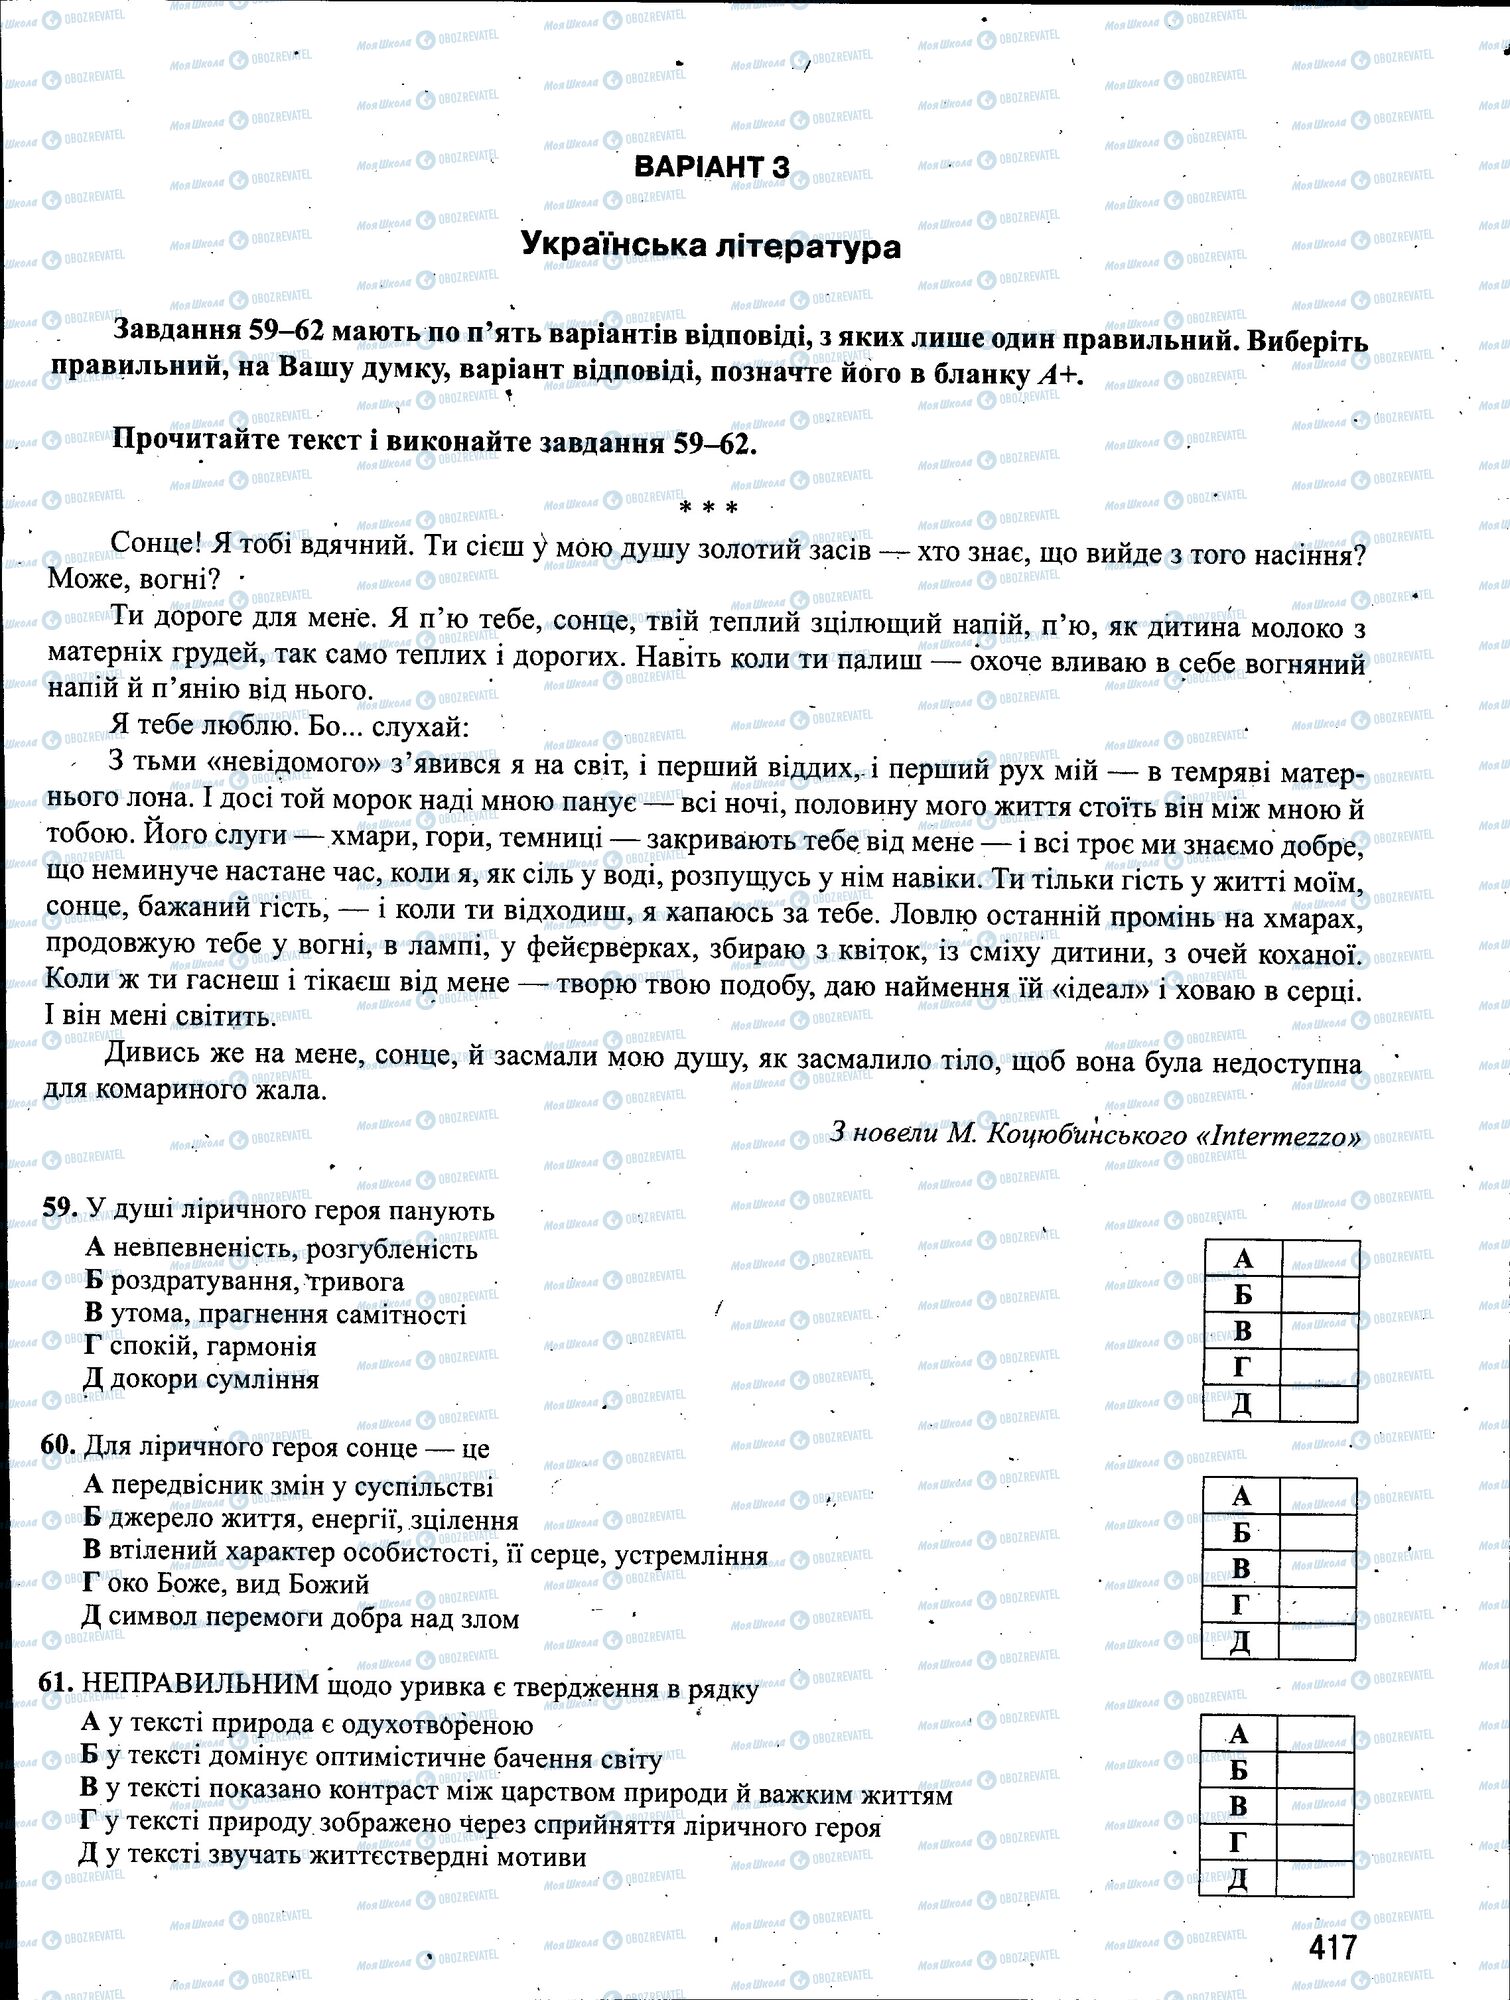 ЗНО Укр мова 11 класс страница 417